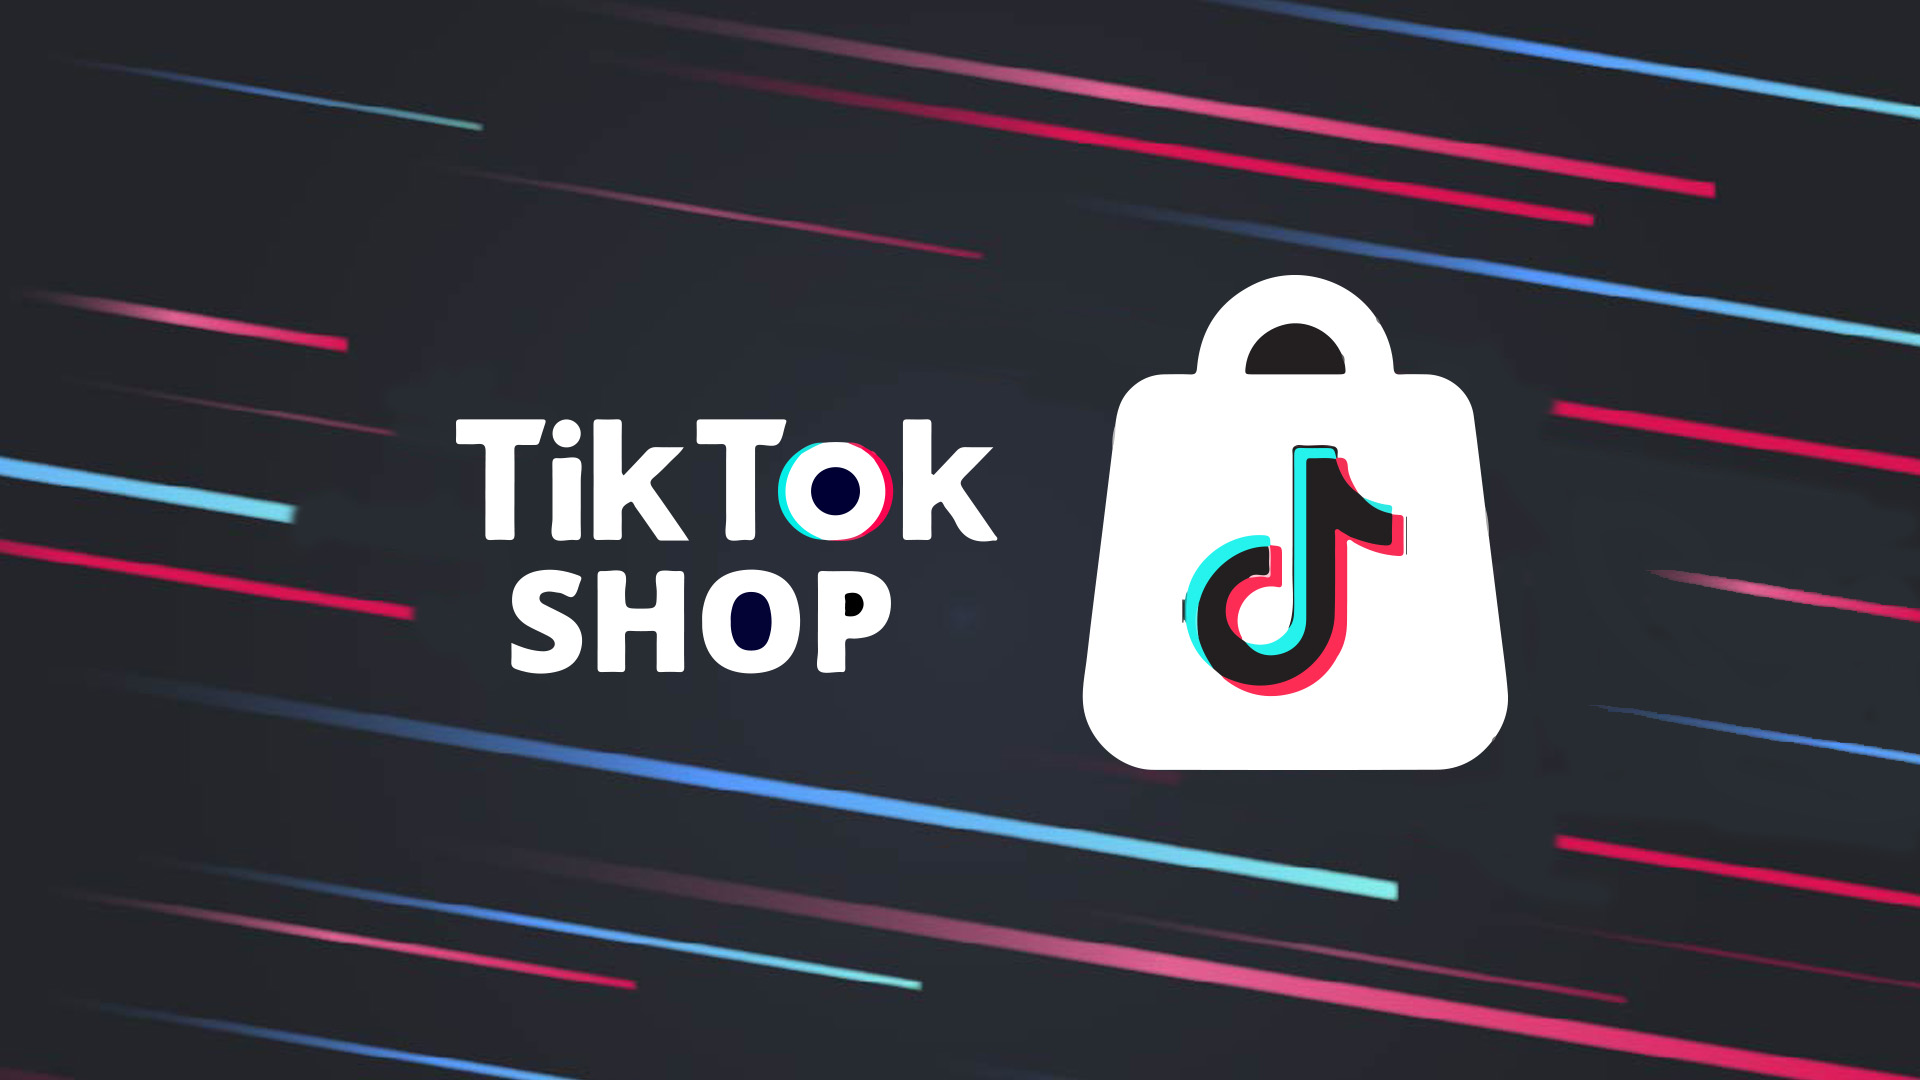 TikTok Shop Come Back Malam ini Jam 9, Kali Ini Bekerjasama dengan Tokopedia